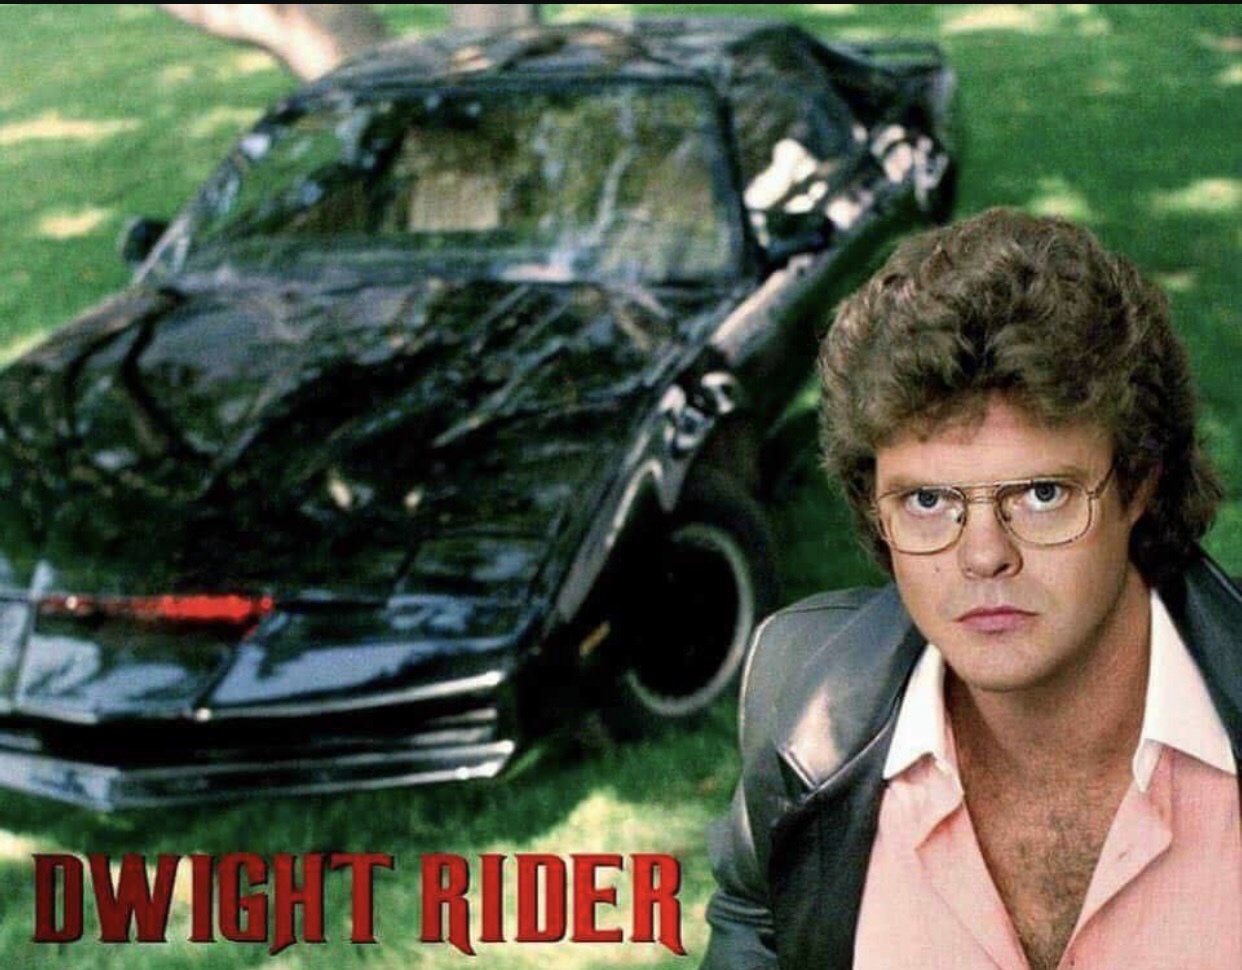 random pics - david hasselhoff knight rider - Dwight Rider